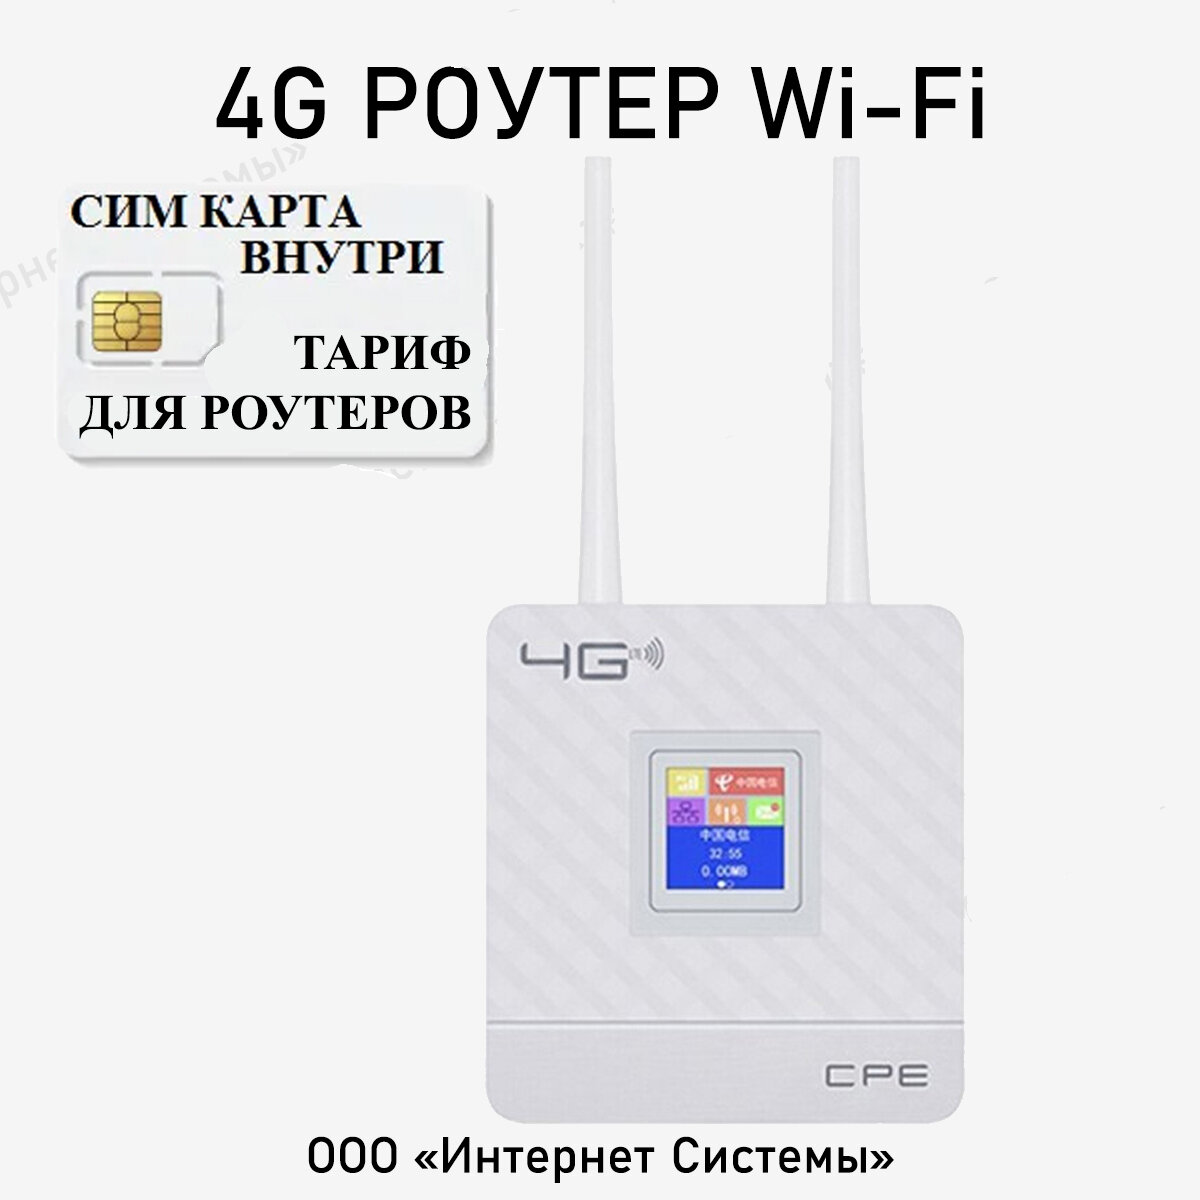 Wifi роутер 4g + СИМ карта В подарок! Роутер работает С любым сотовым оператором россии крыма СНГ. Разблокированный. НЕ требует настроек! С жк-экраном